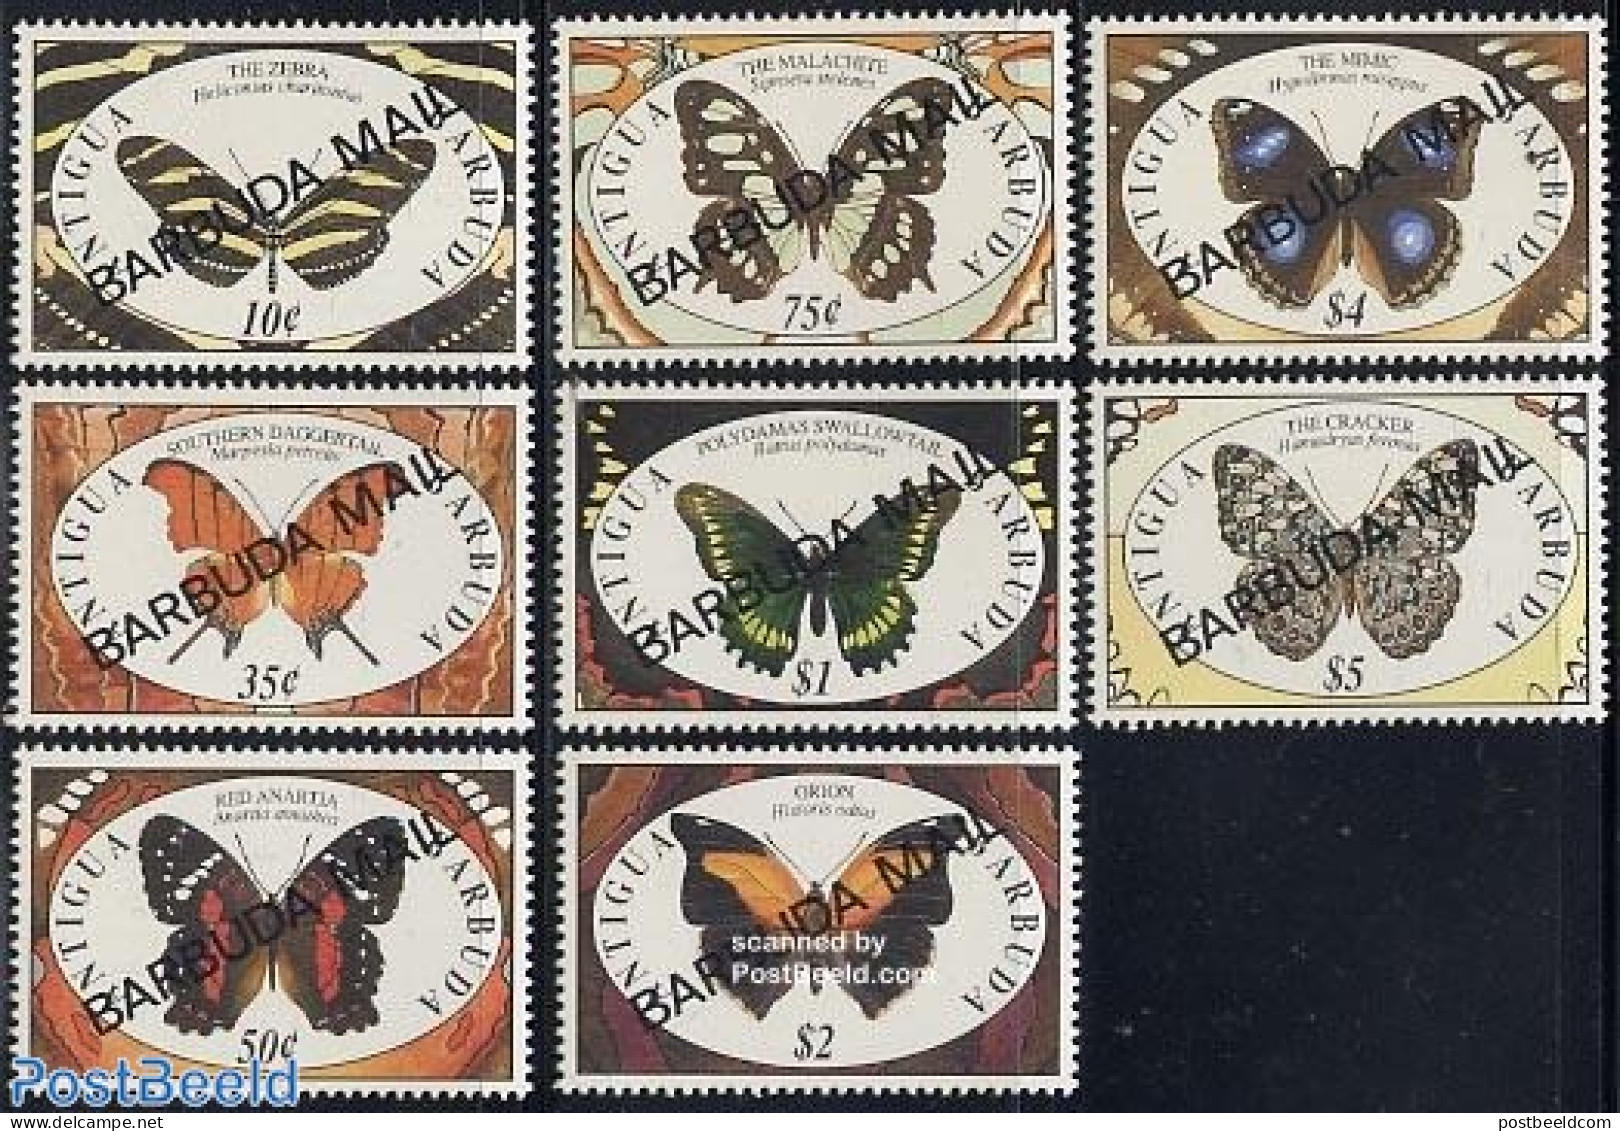 Barbuda 1991 Butterflies 8v, Mint NH, Nature - Butterflies - Barbuda (...-1981)